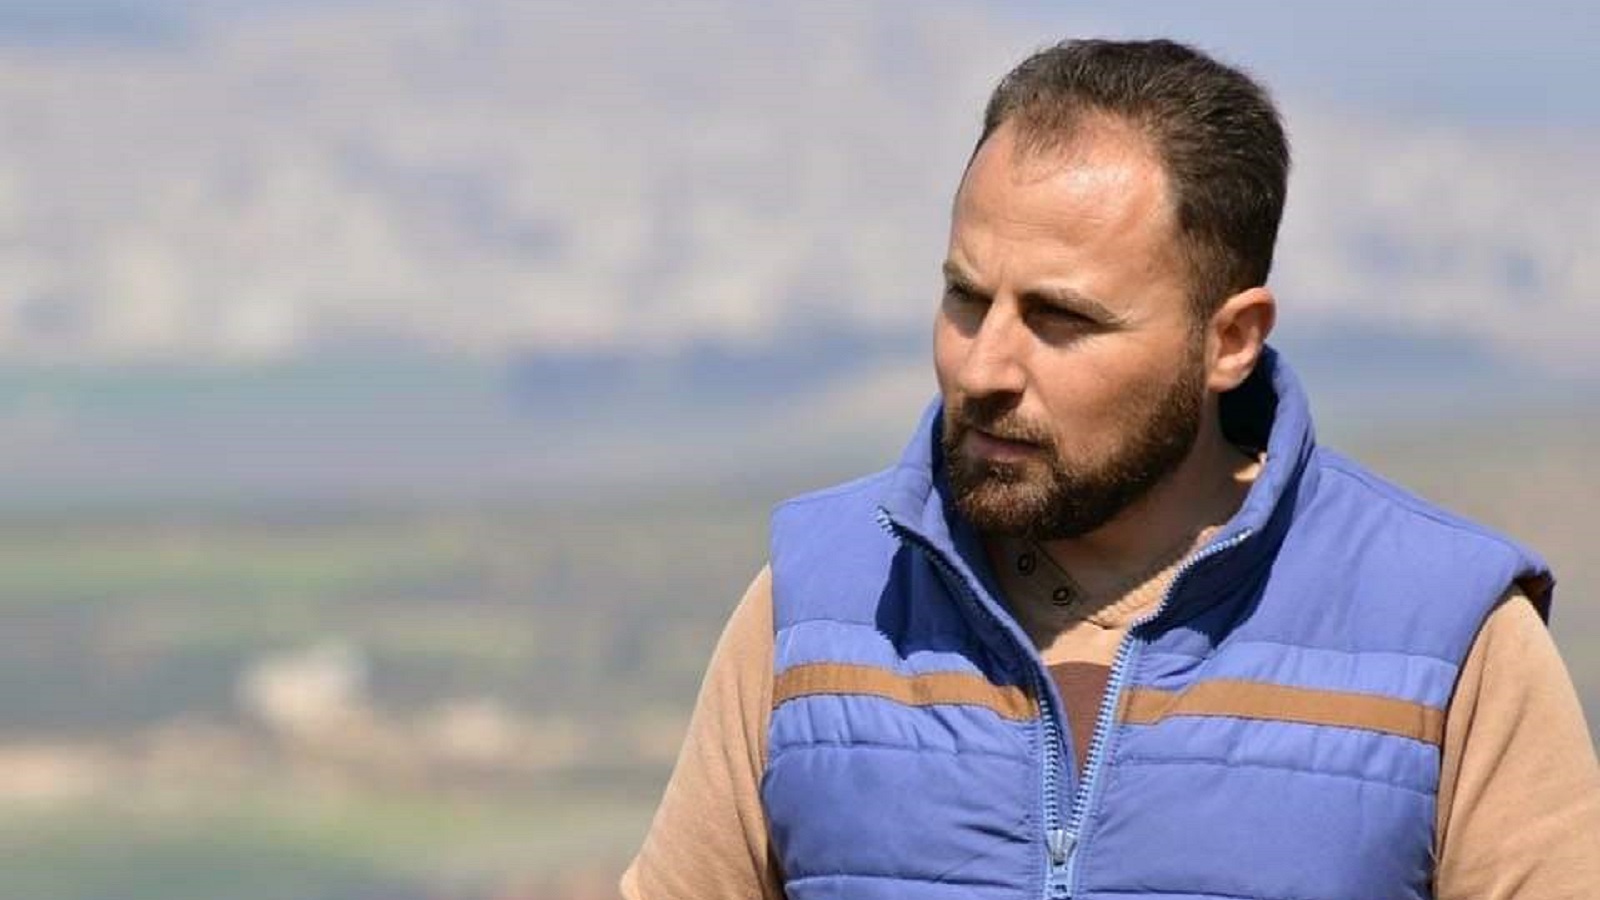 وجه الصحفي الموالي (رضا الباشا) نقدًا لاذعًا لحكومة الأسد بسبب ما عدَّ تطنيش لمنشوراته وإظهار للحقائق من فساد وغيره في مدينة حلب.